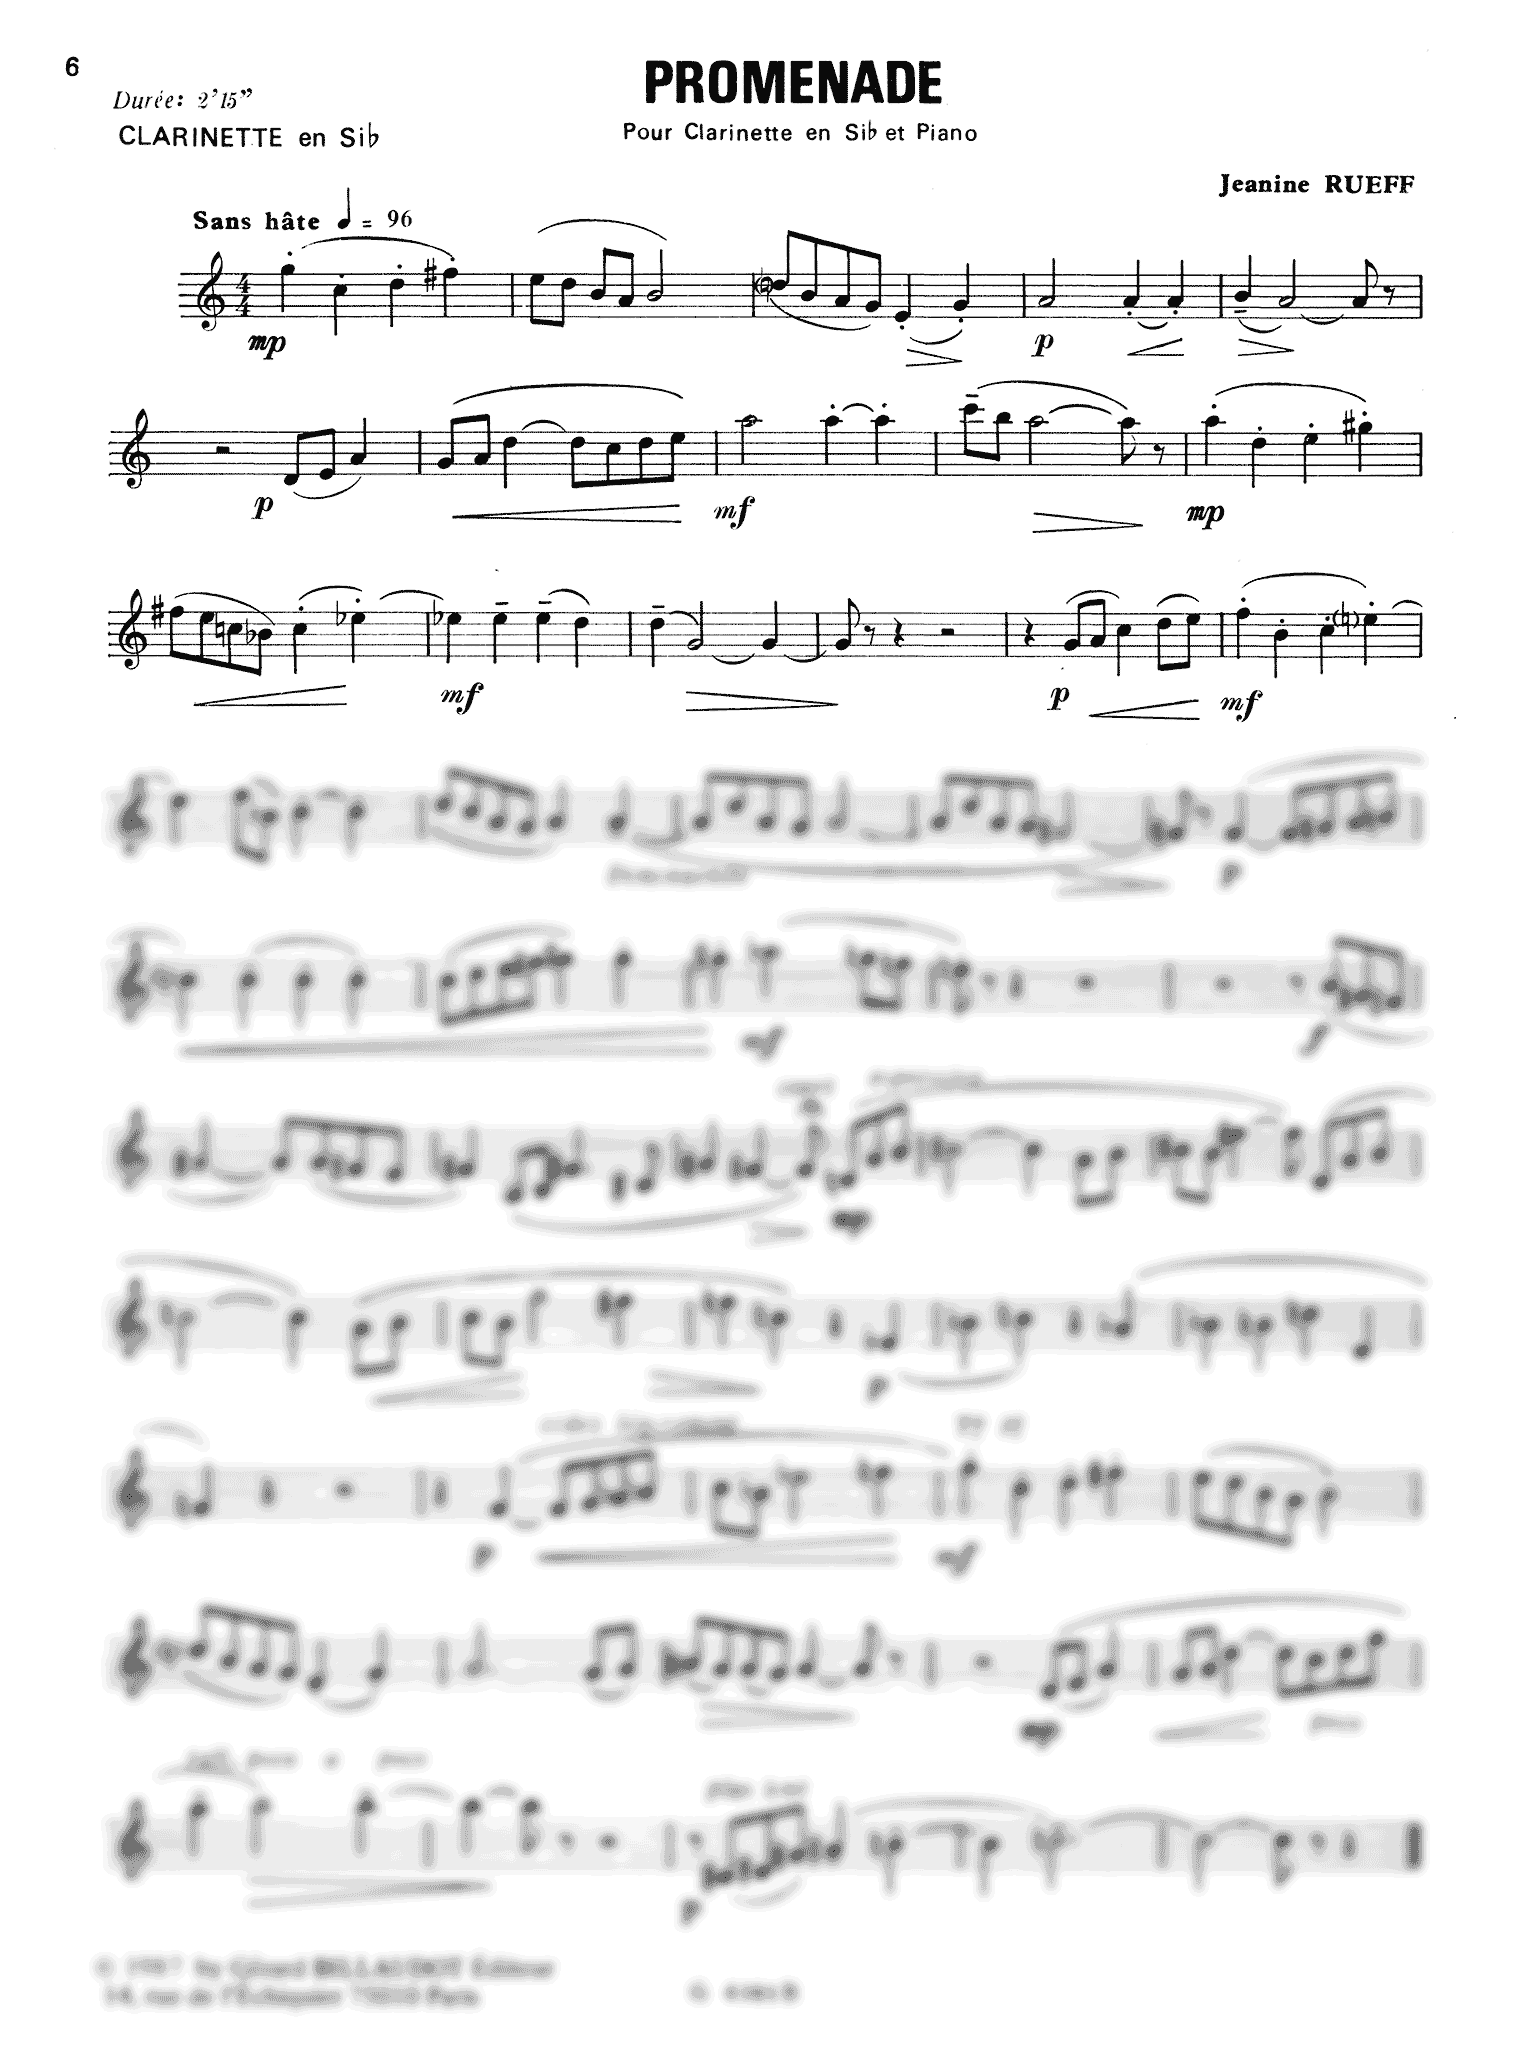 Rueff Promenade clarinet and piano solo part